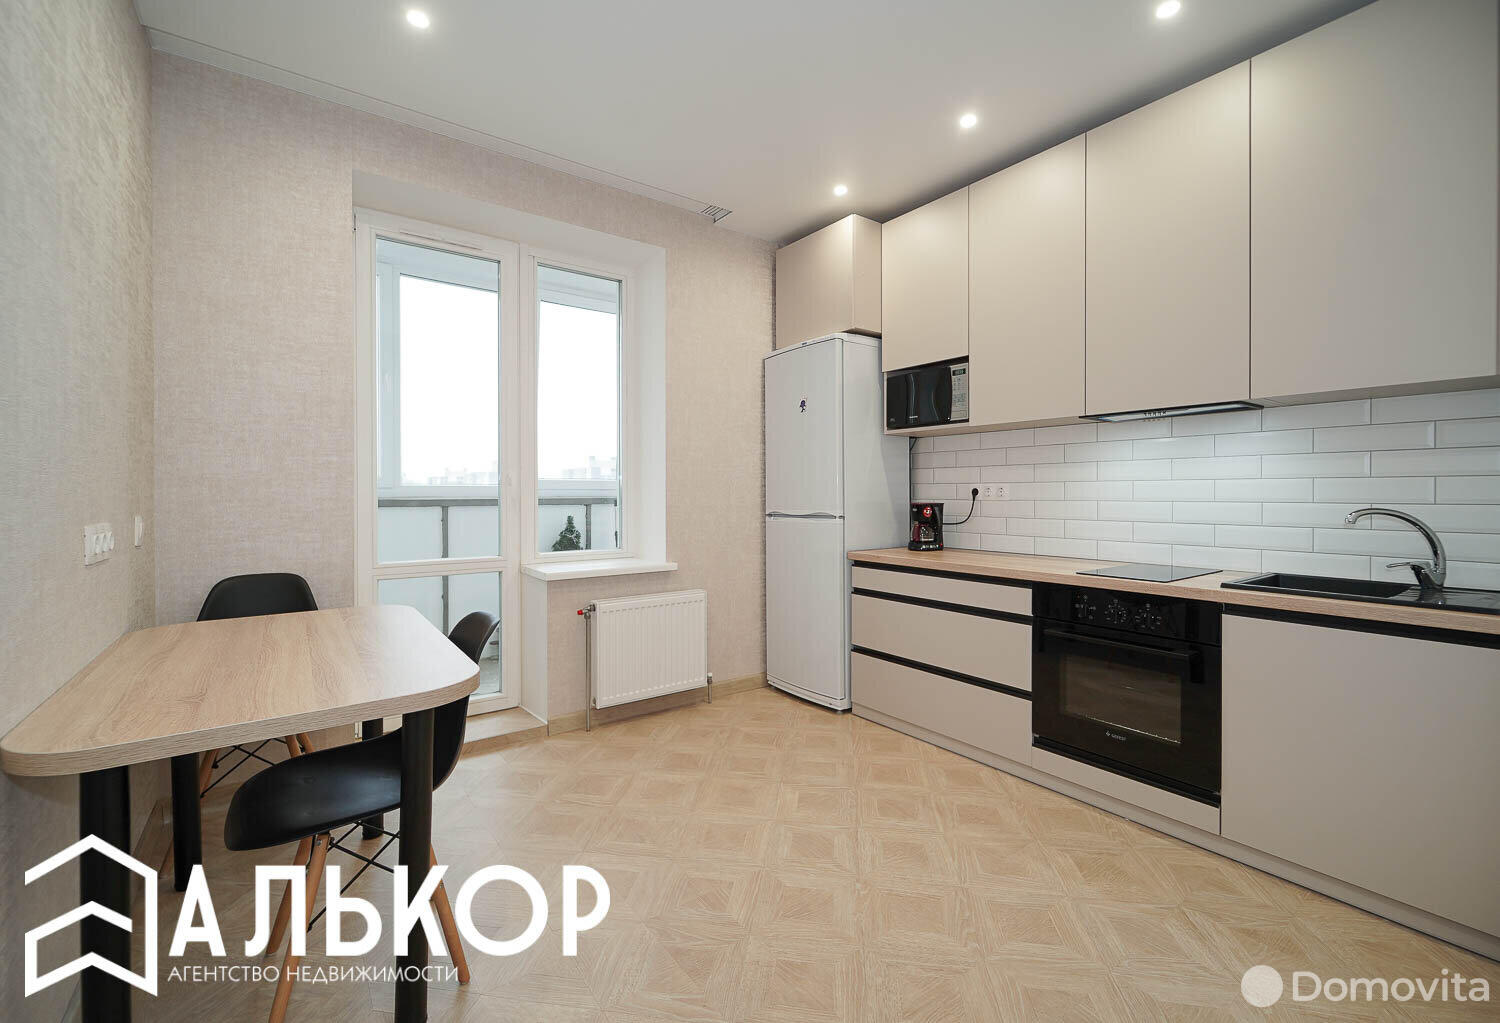 Стоимость продажи квартиры, Минск, ул. Притыцкого, д. 113